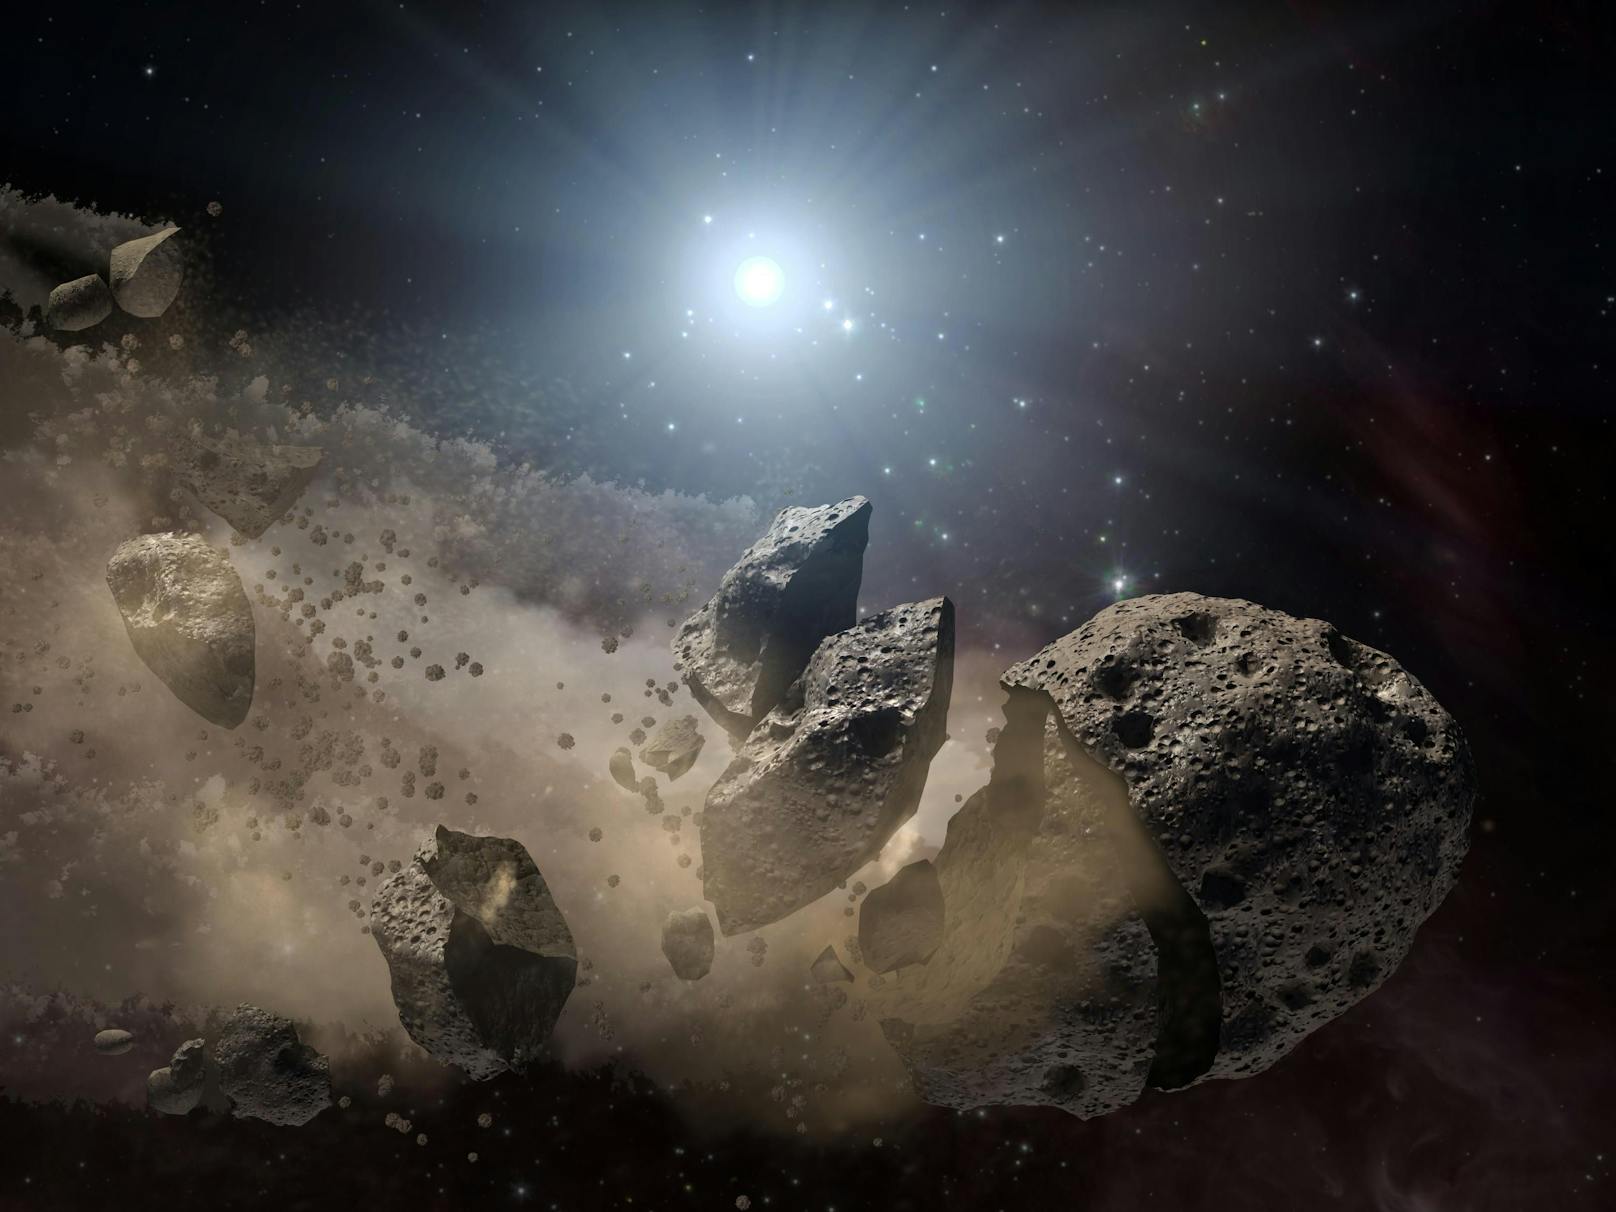 Ein Entwurf der NASA zeigt einen in mehrere Teile zerbrochenen Asteroiden. 2029 droht der Erde der Ernstfall.